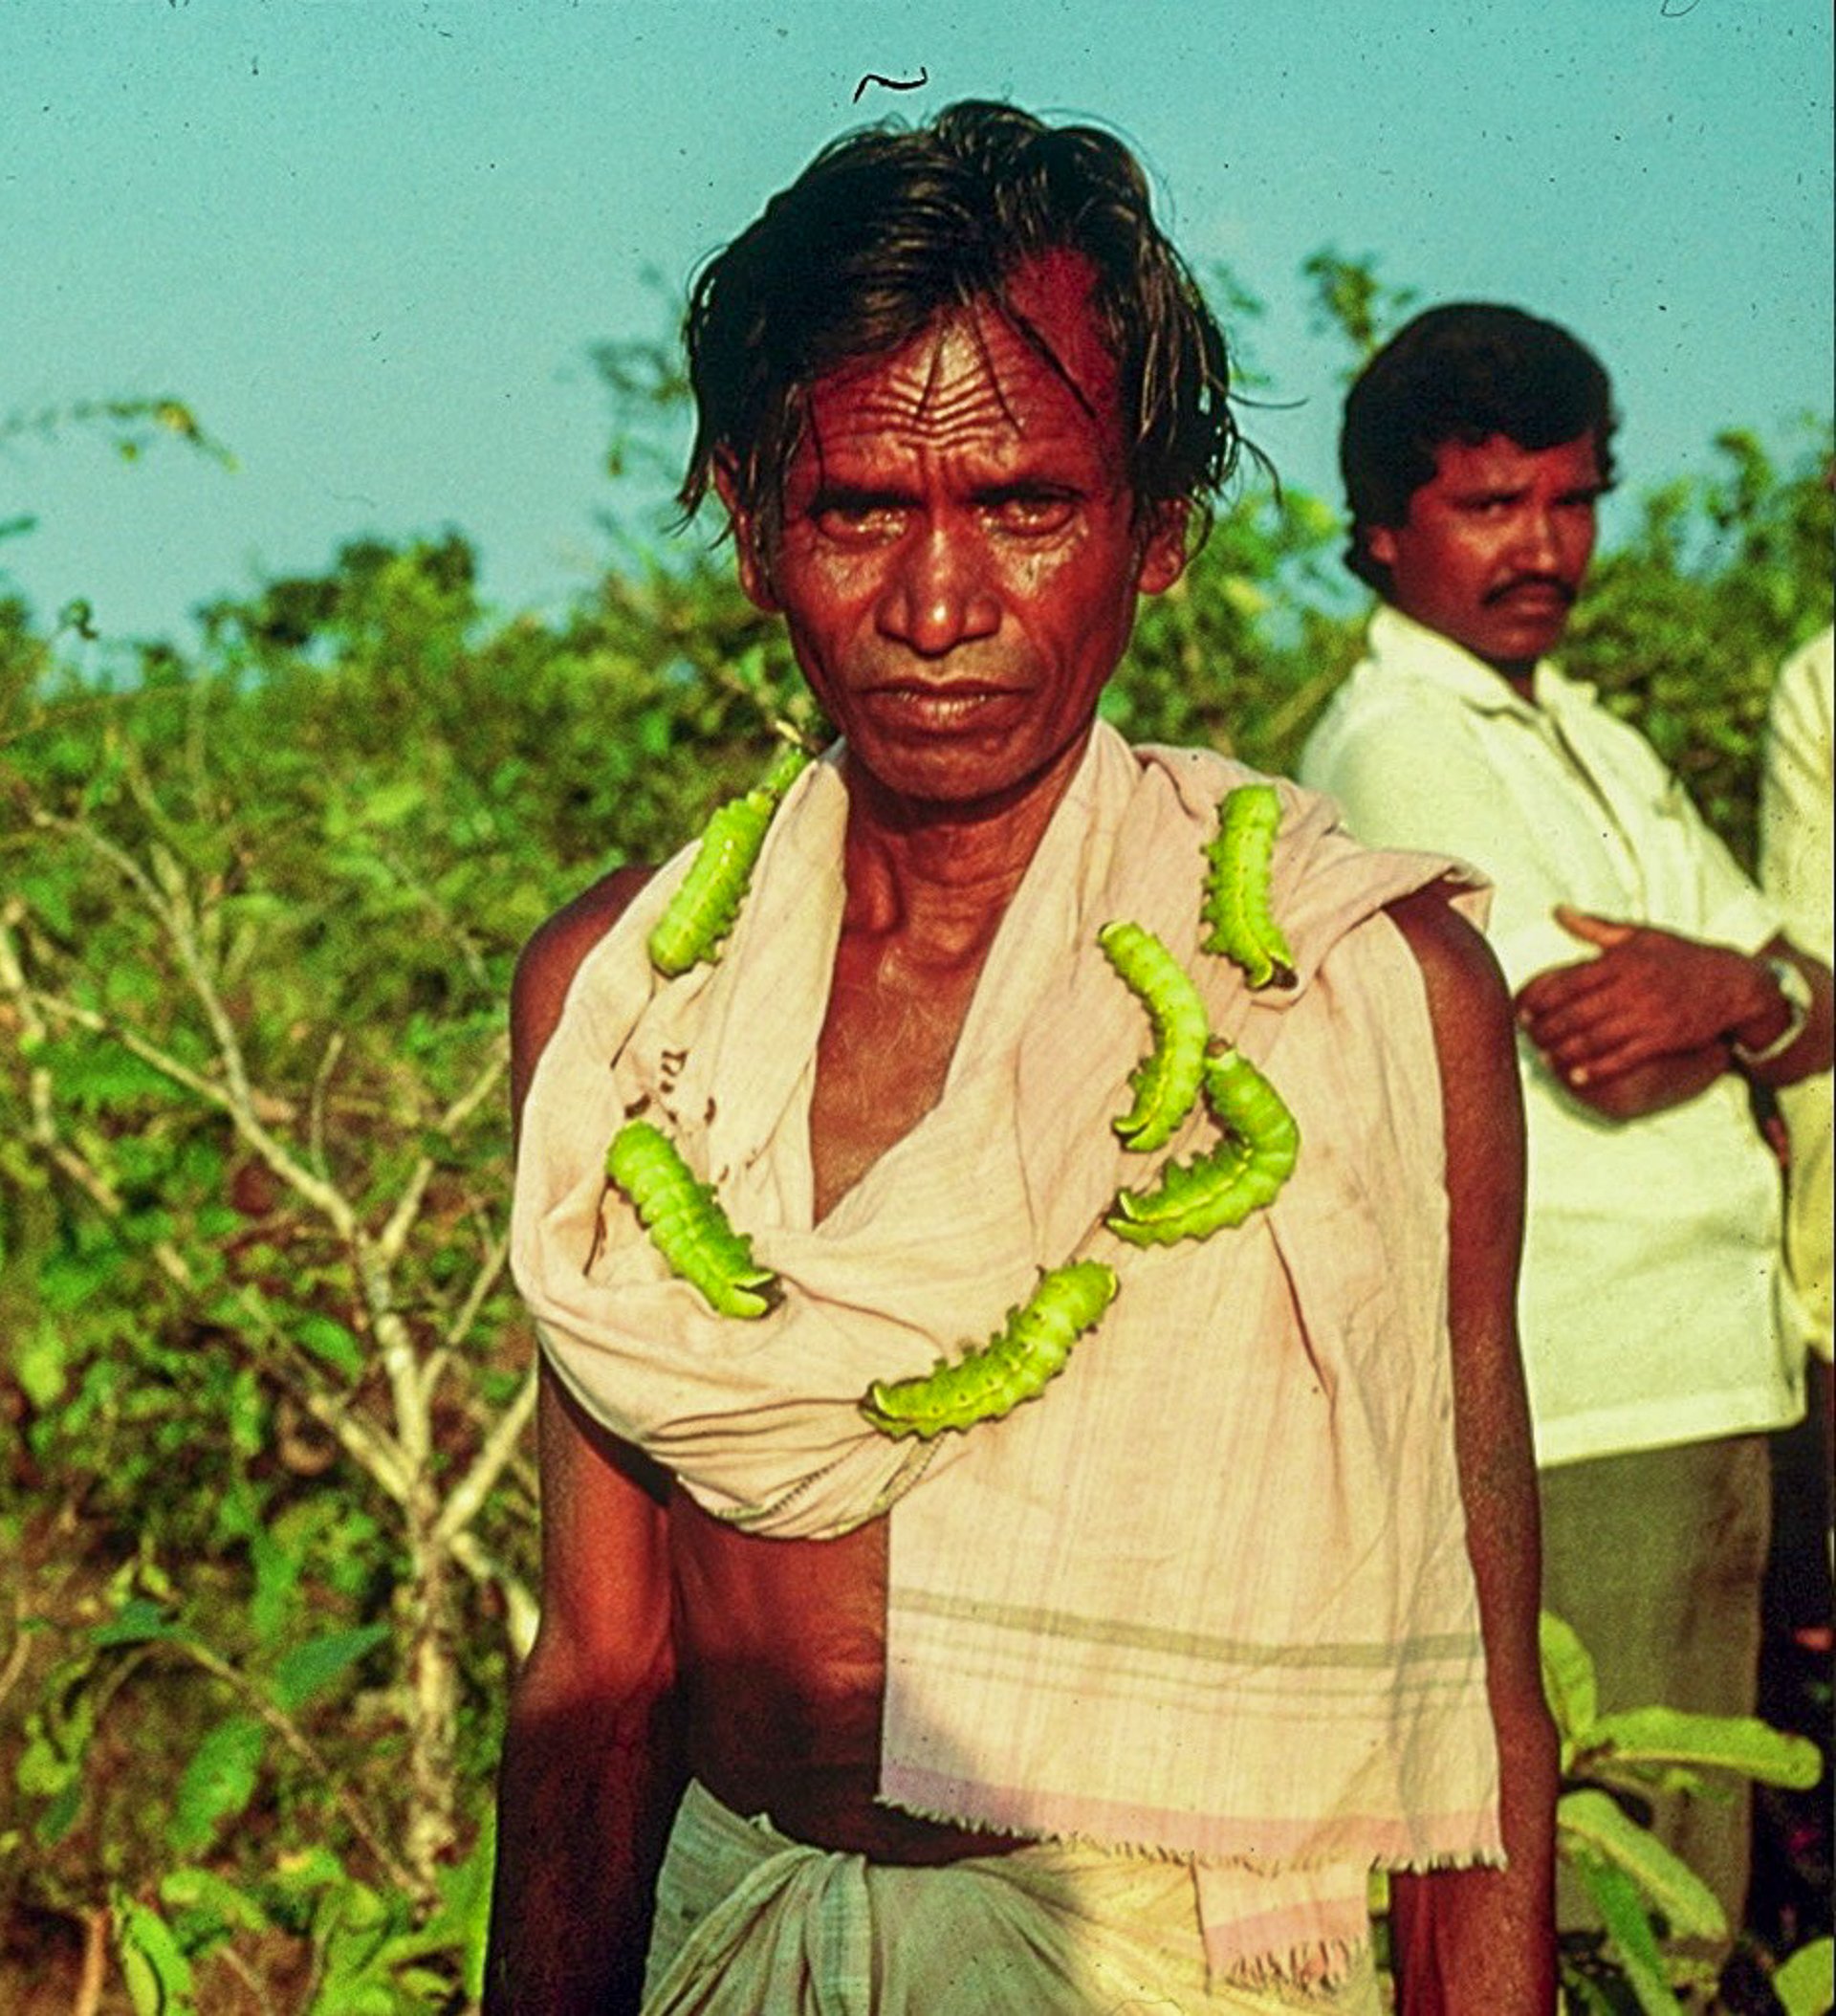 farmer wearing tussah caterpillars